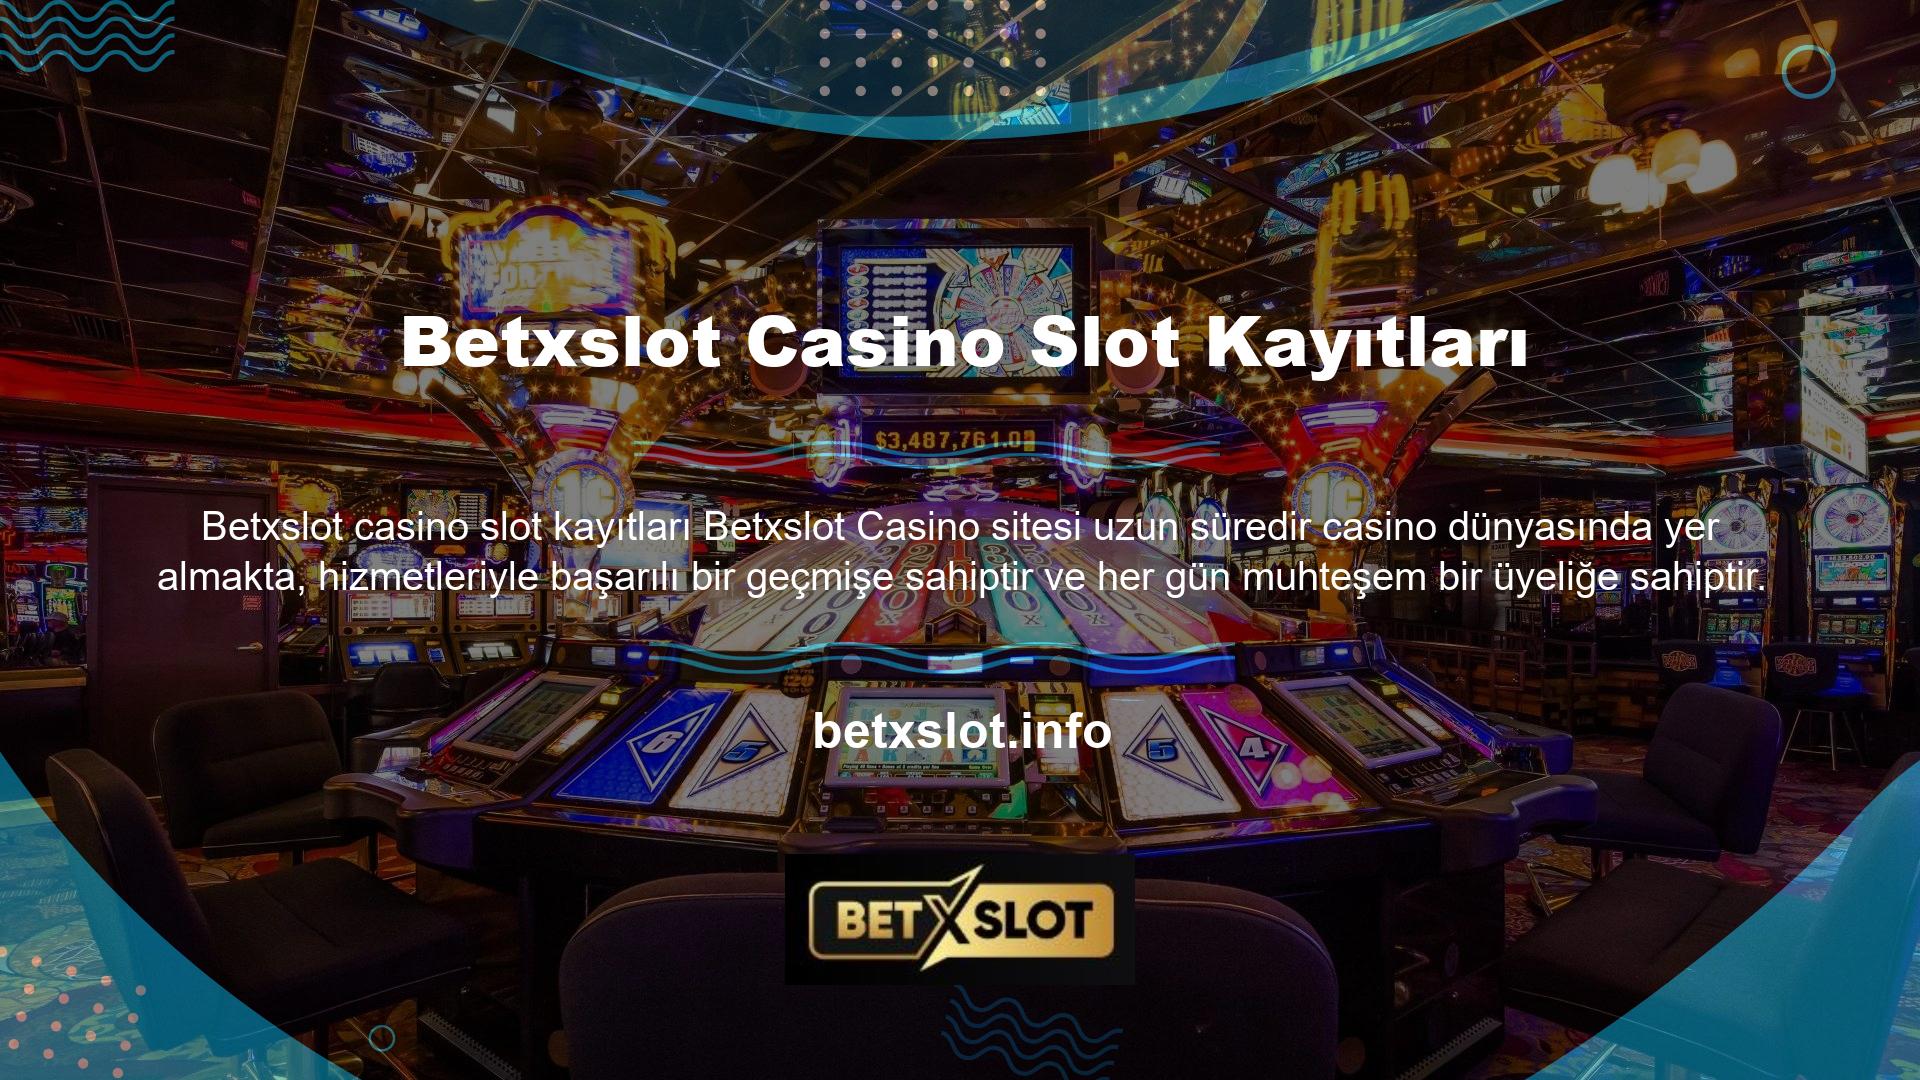 Kapsamlı altyapıya sahip lisanslı bir casino slot kayıt sitesinde faaliyet göstermek ve bahis oynamak için kayıt işlemini tamamlamanız gerekir